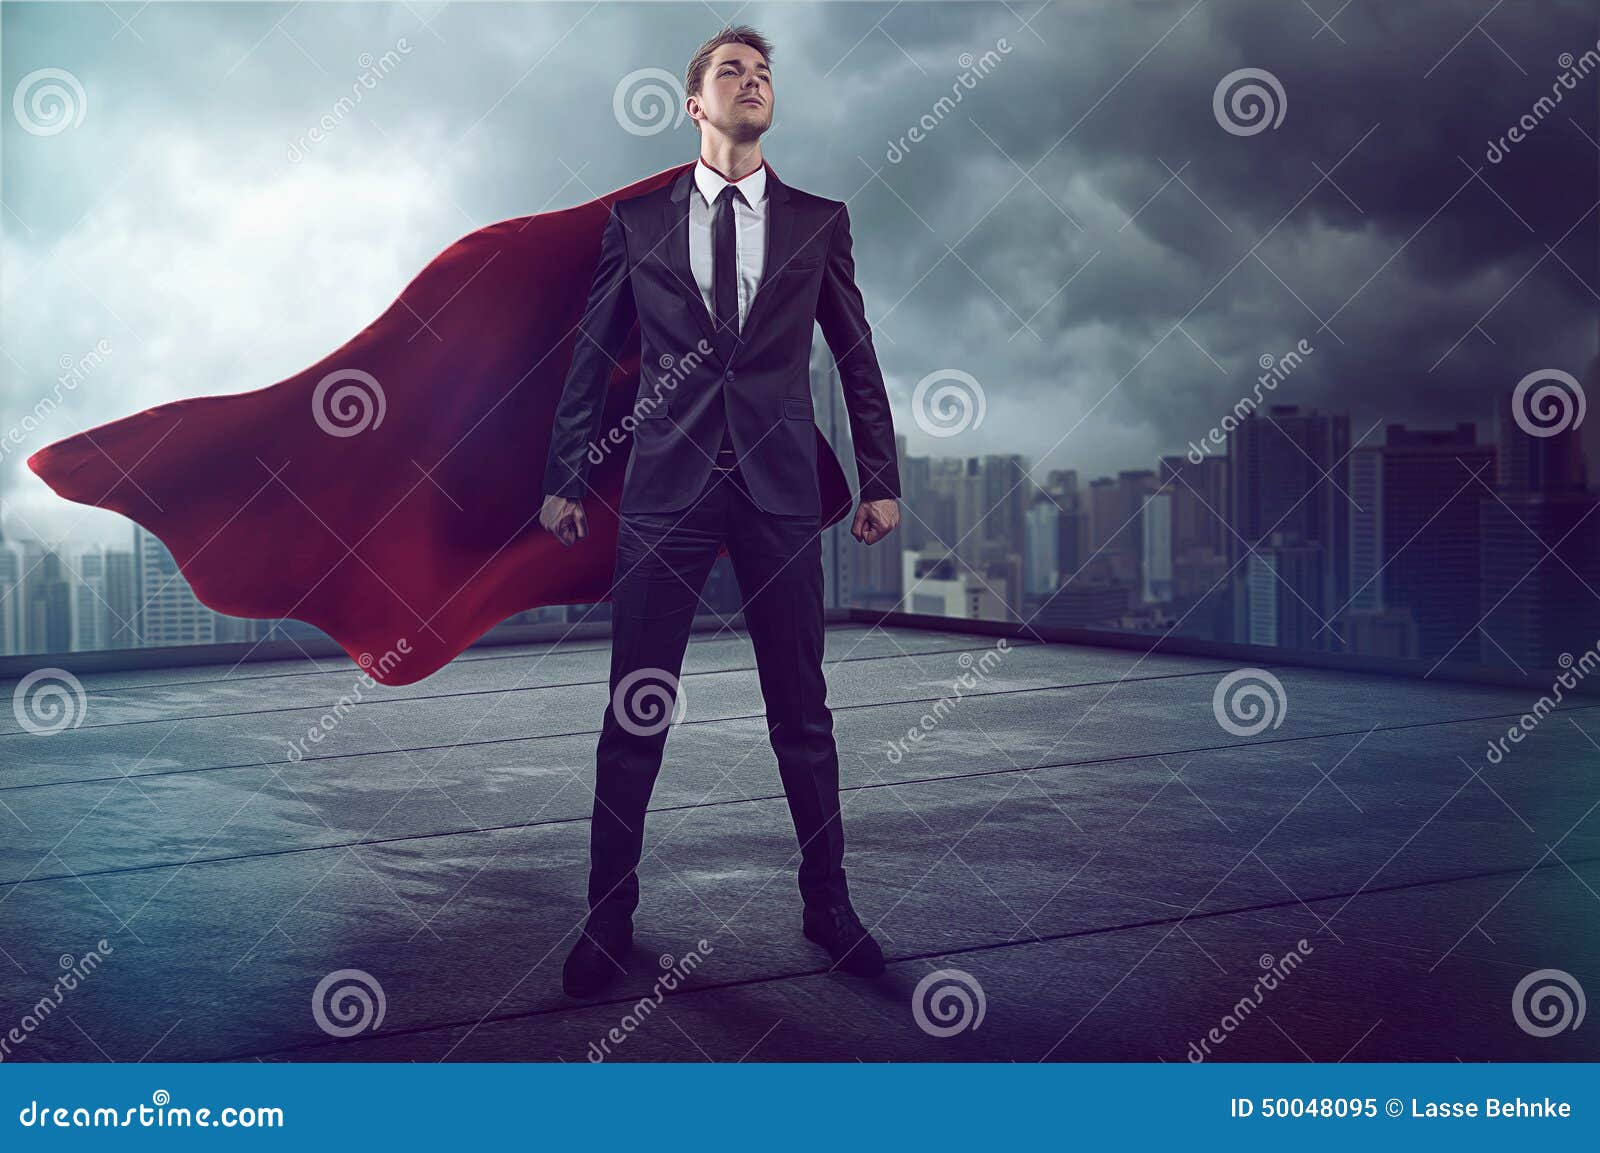 hero with cape